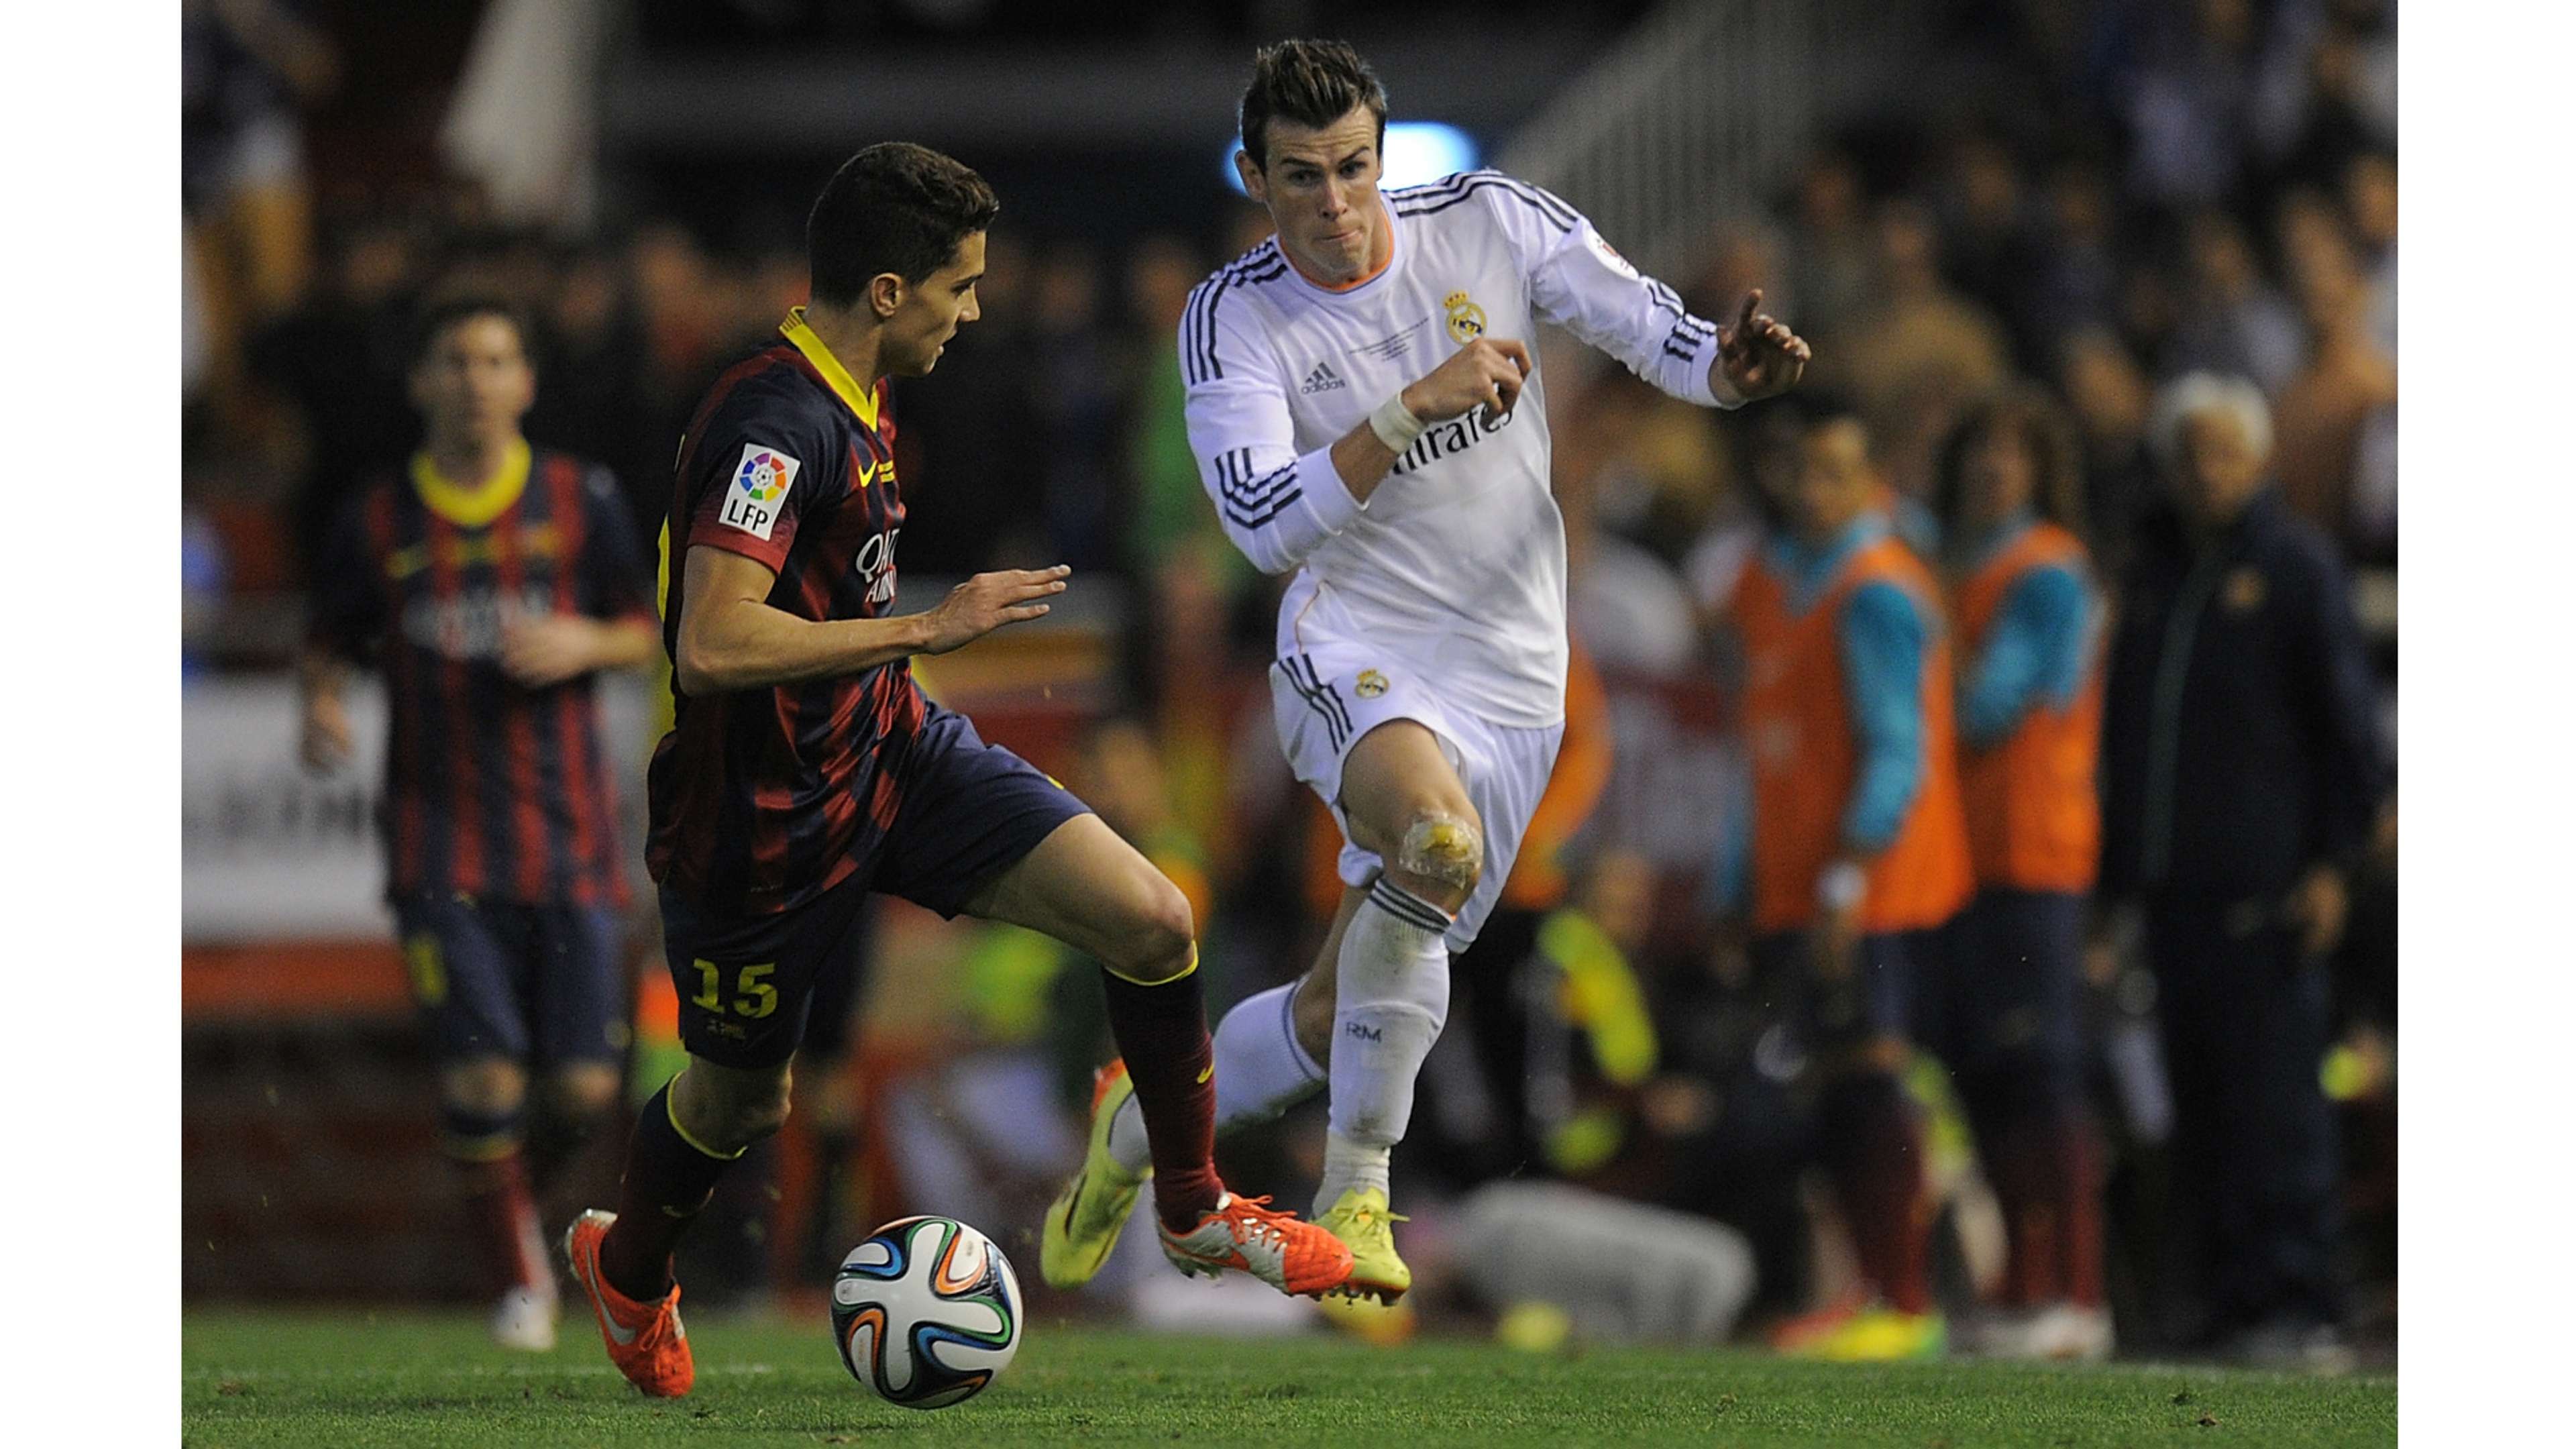 Gareth Bale Marc Bartra Real Madrid Barcelona Copa del Rey 2014